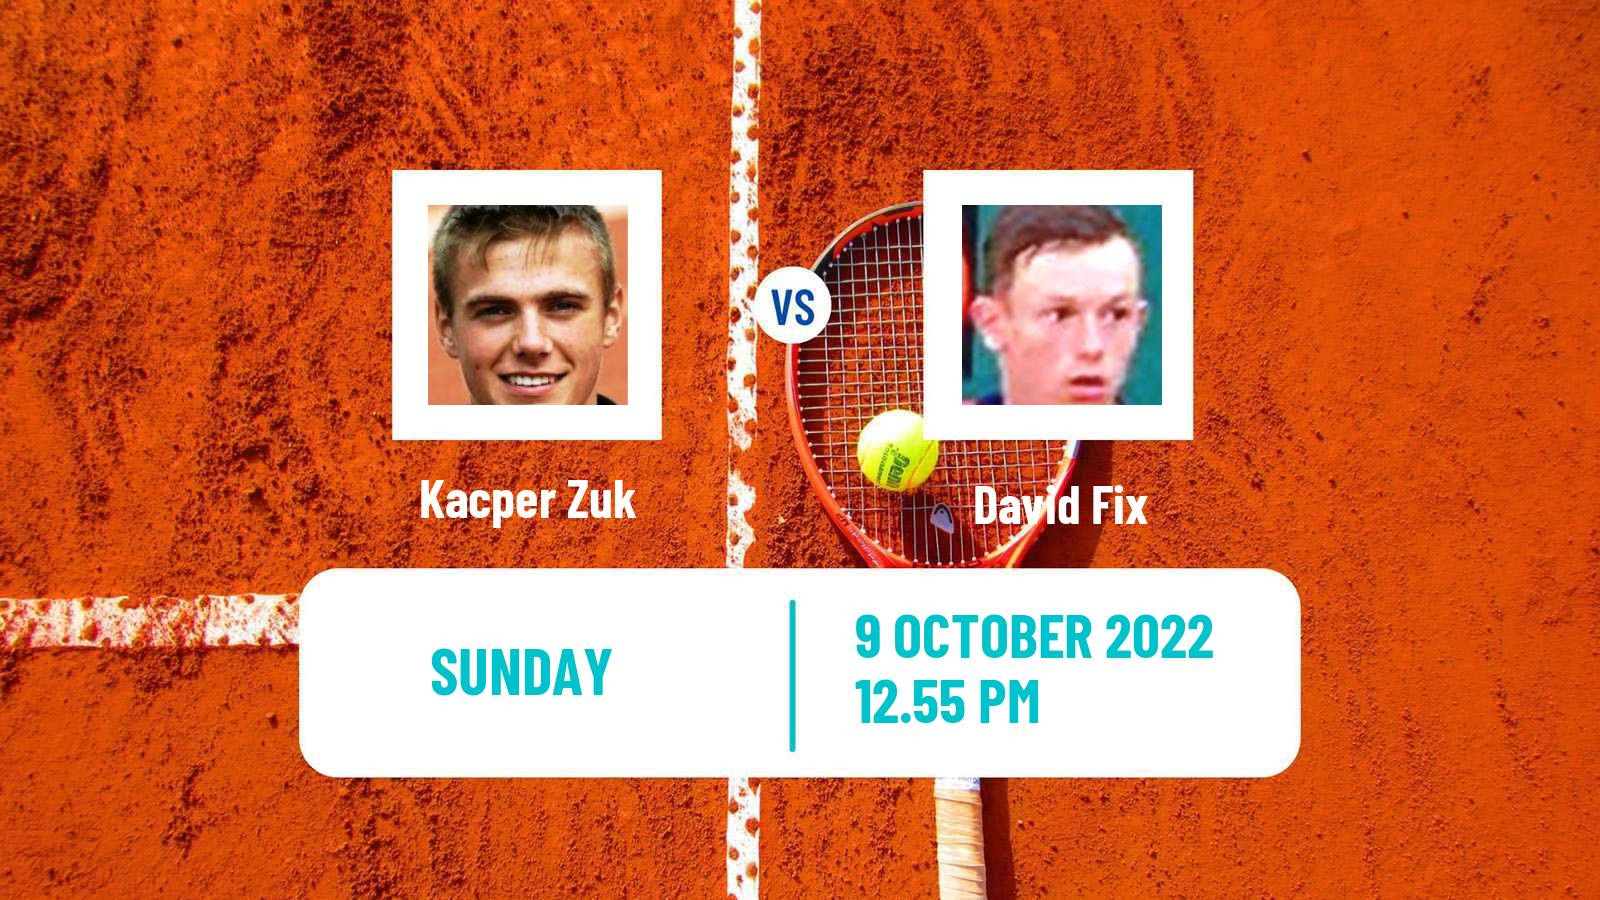 Tennis ATP Challenger Kacper Zuk - David Fix